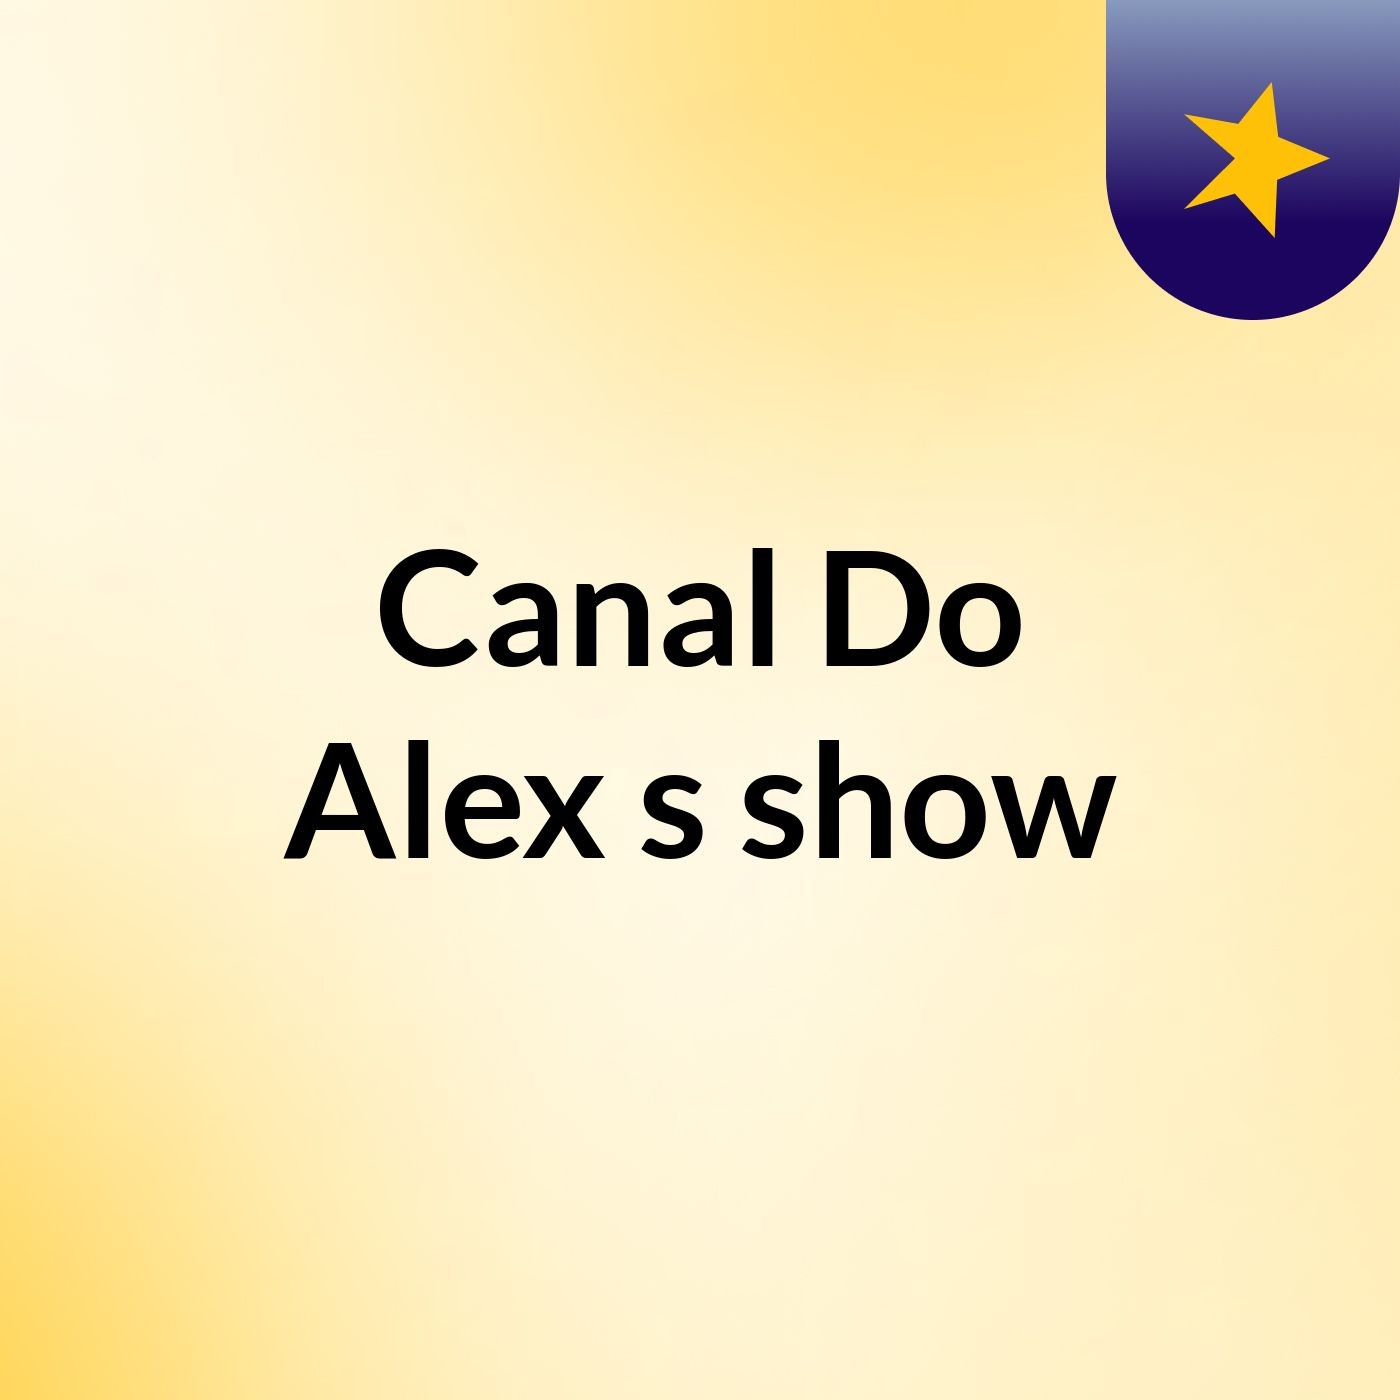 Canal Do Alex's show